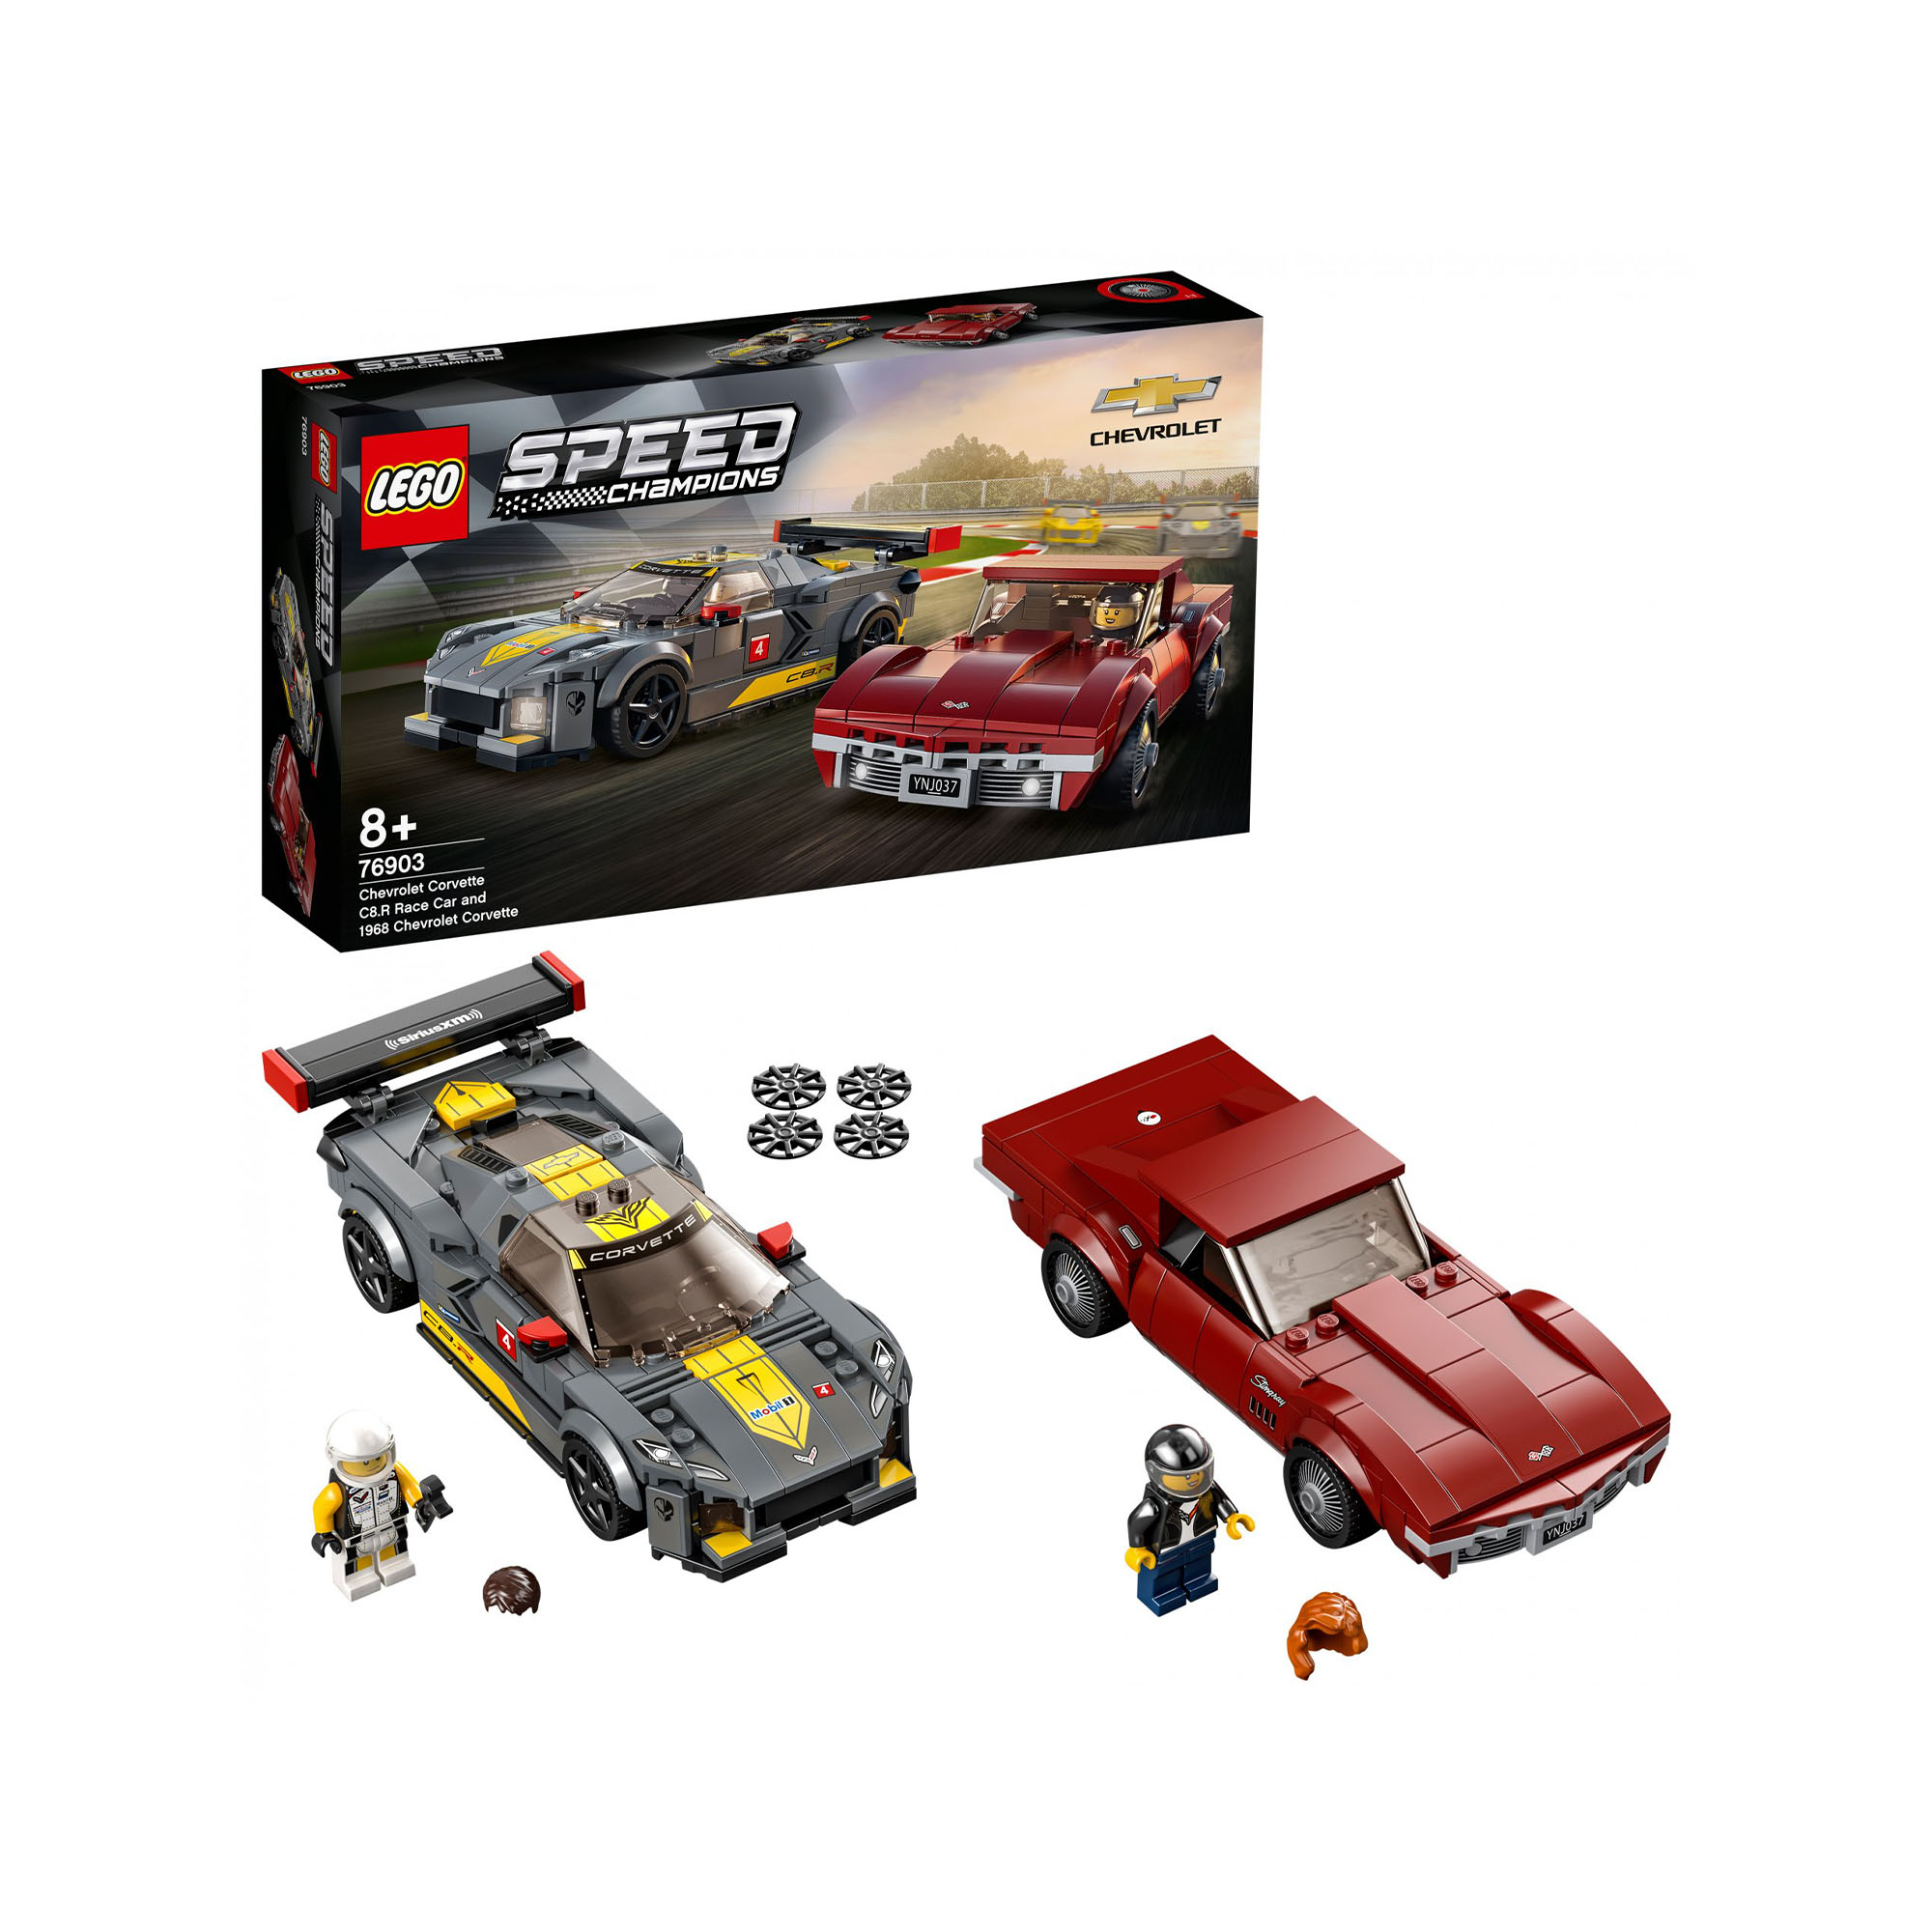 LEGO Speed Champions Chevrolet Corvette C8.R e 1968 Chevrolet Corvette, 2 Modell 76903, , large